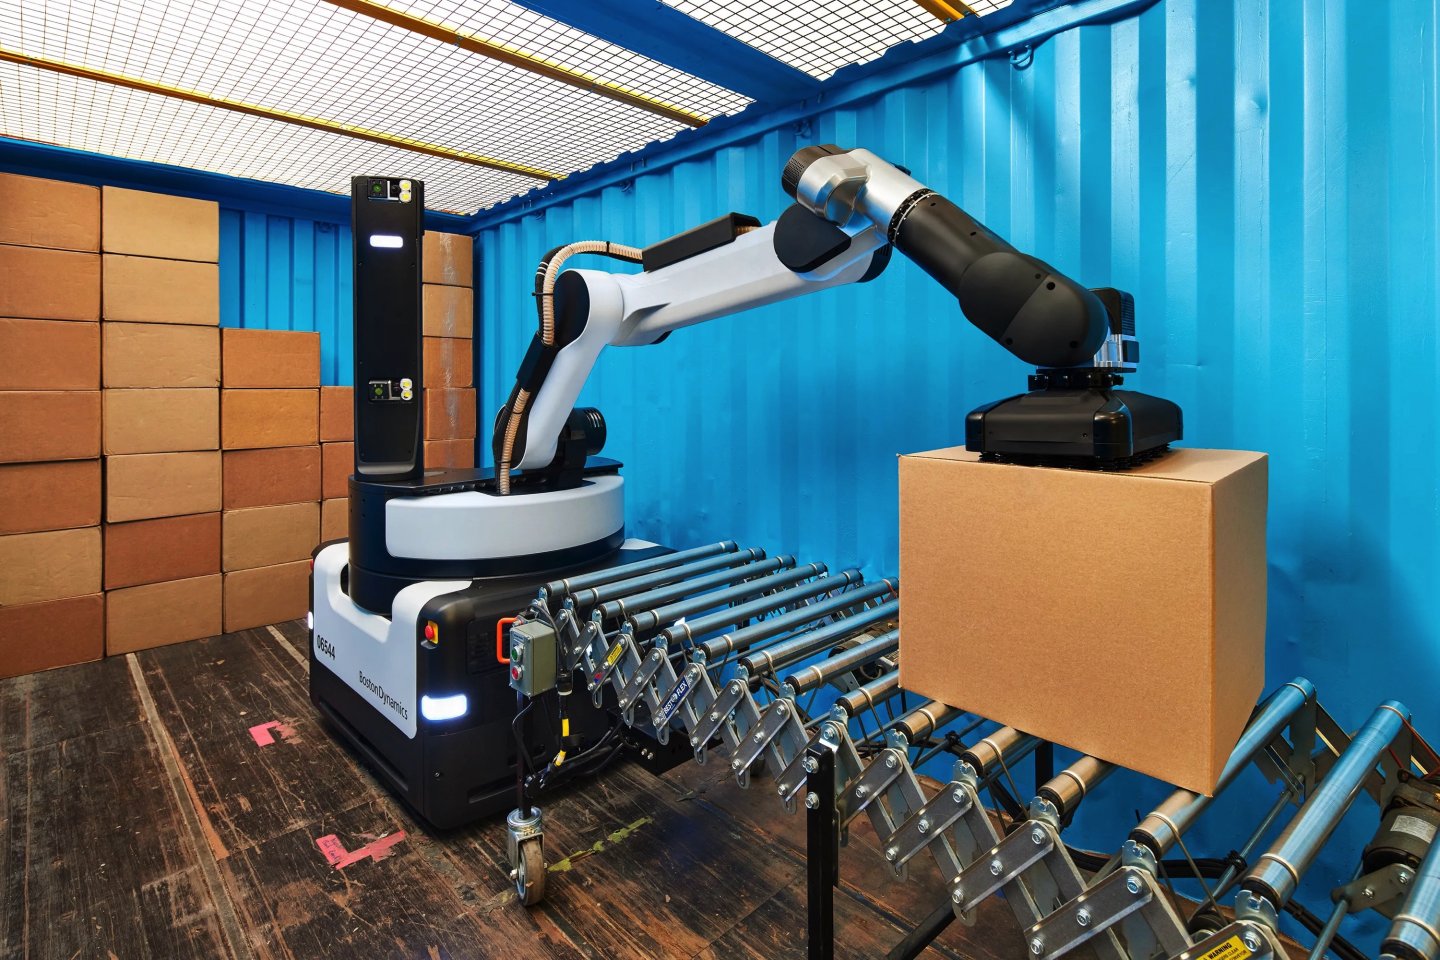 【影片】波士頓動力推出 Stretch 倉庫搬貨機器人，每小時可搬運 800 個 20 公斤包裹